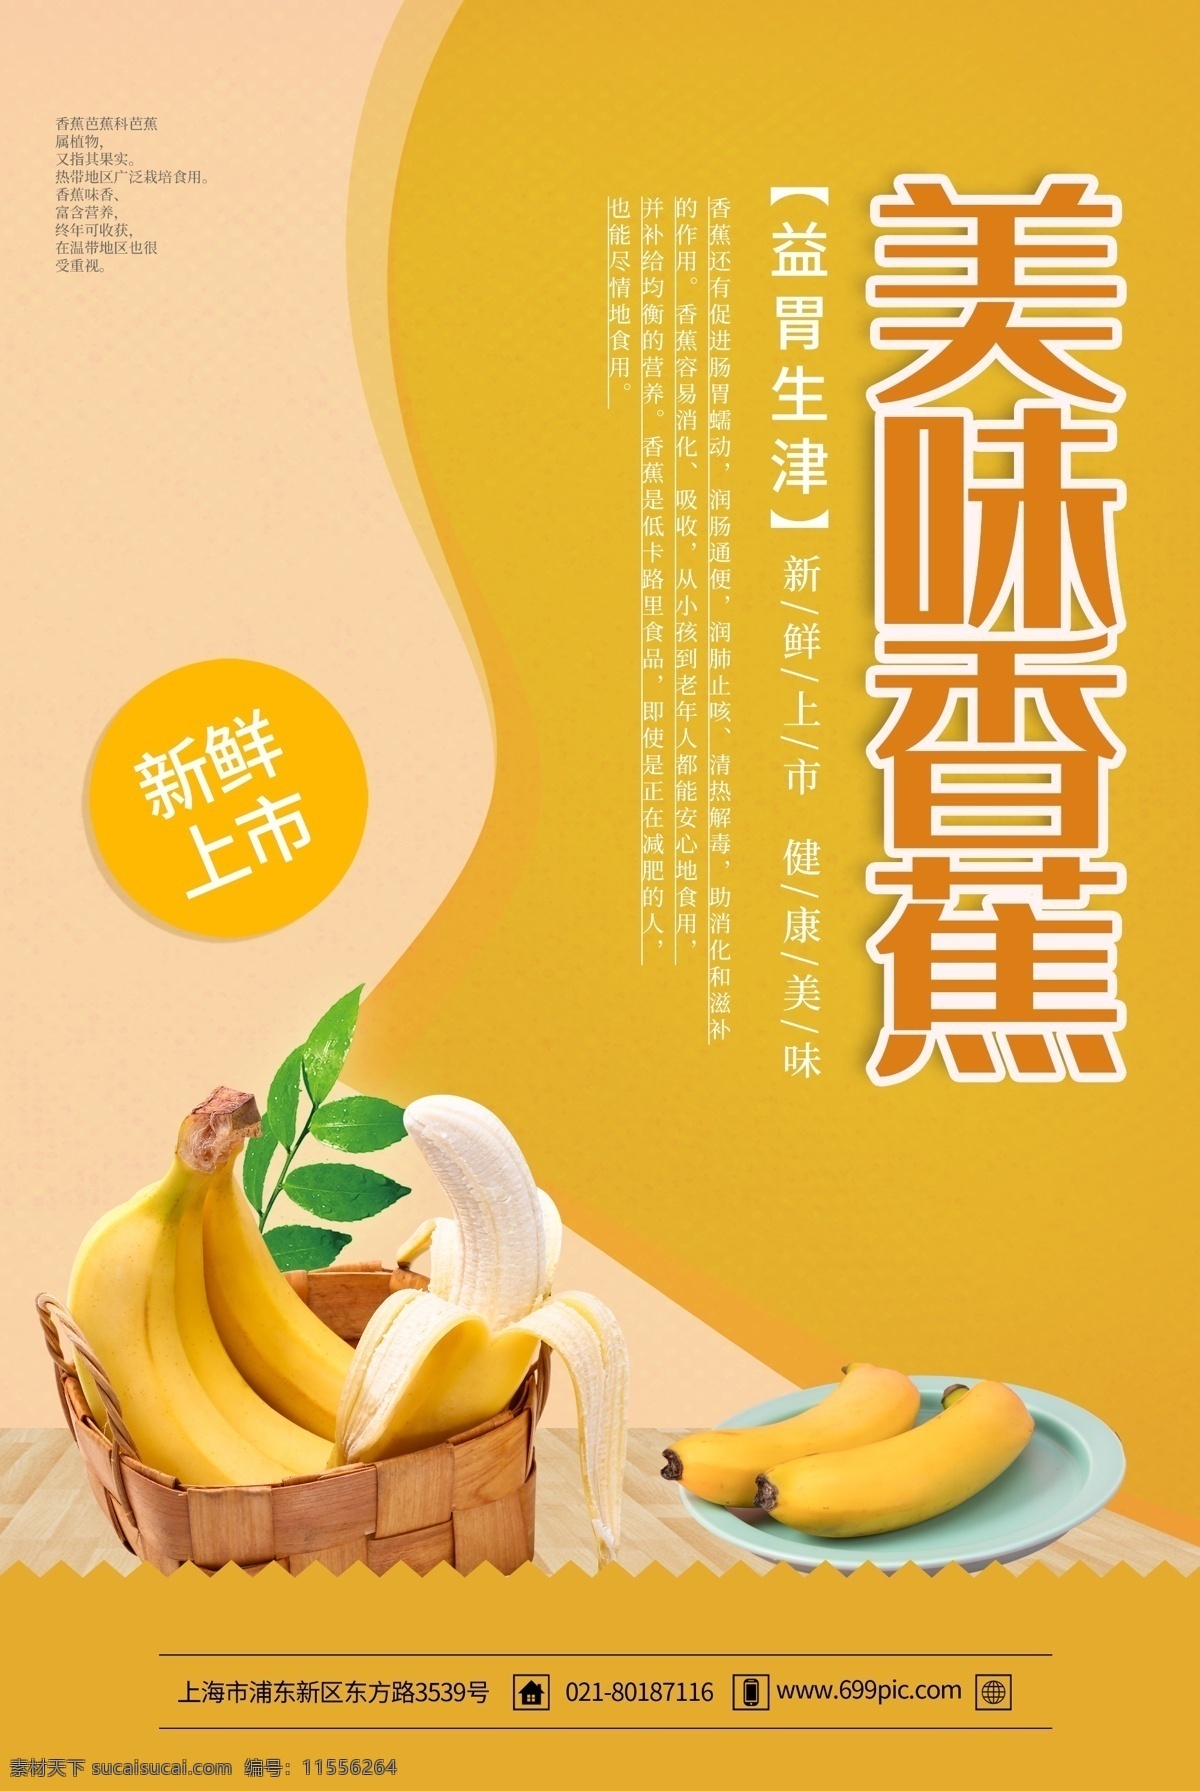 简约 黄色 香蕉 水果 海报 水果海报 水果促销 促销海报 香蕉海报 水果店促销 水果宣传 新鲜水果 美味香蕉